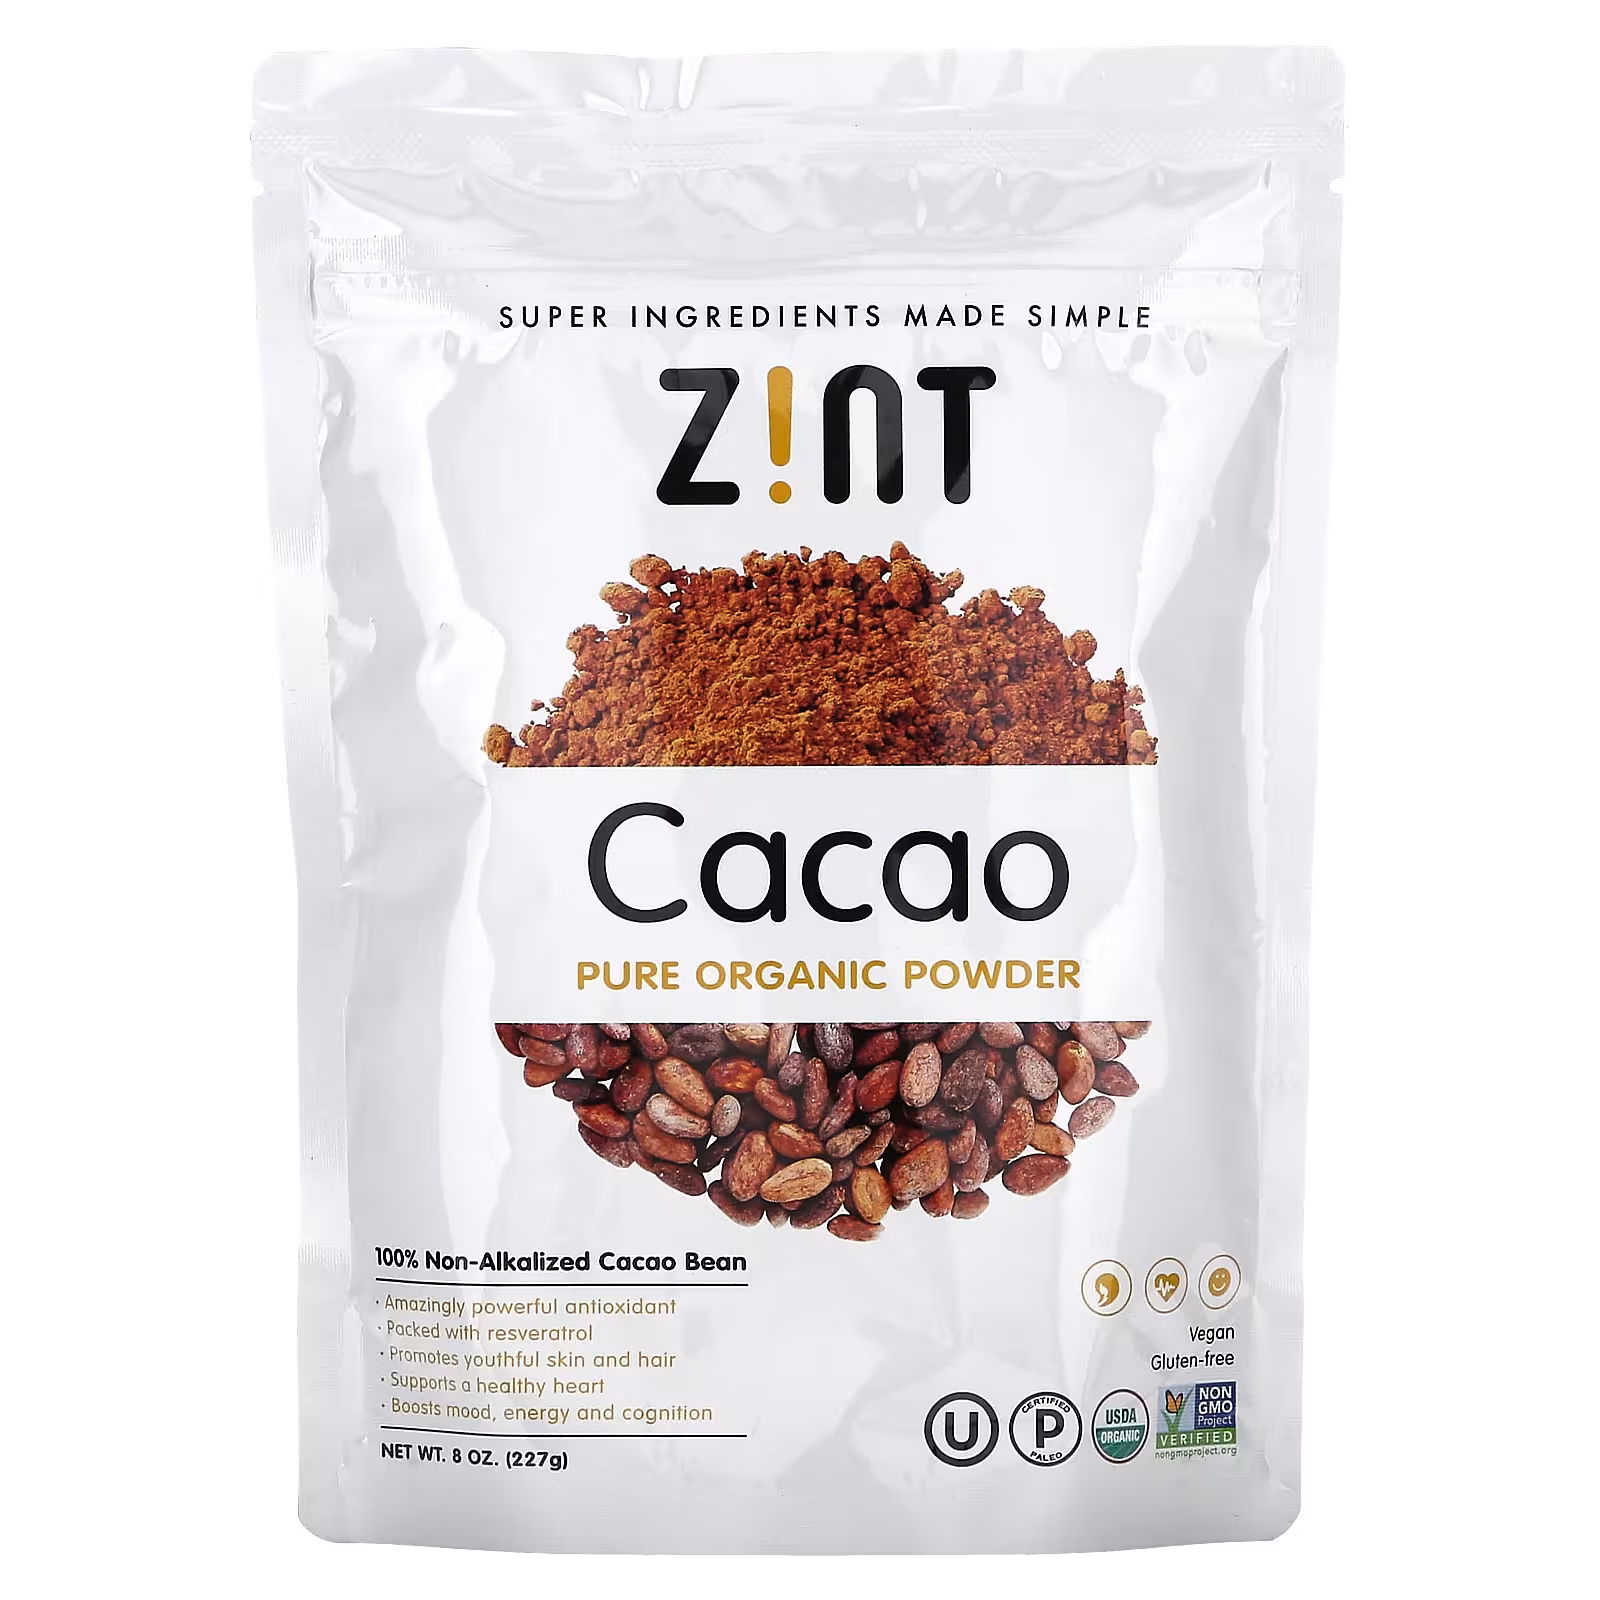 Порошок какао Zint Pure Organic, 227 г wildly organic ферментированный порошок какао 227 г 8 унций